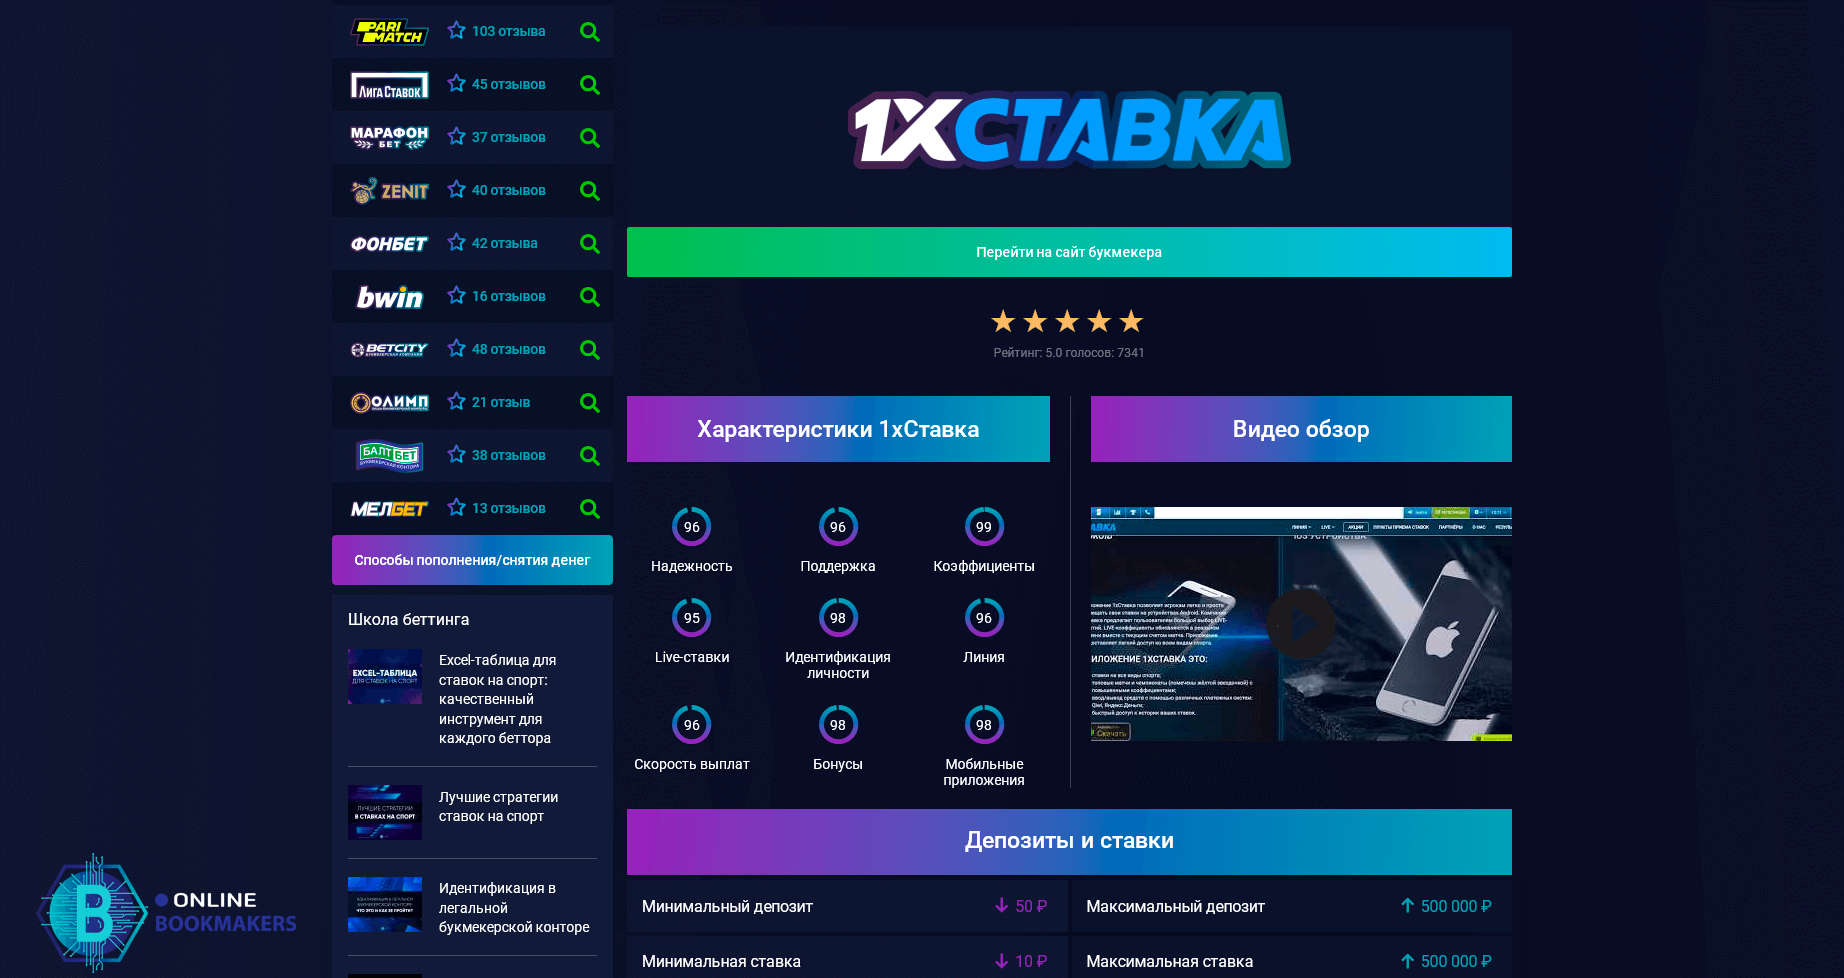 Характеристики бк 1хСтавка на online-bookmakers.ru